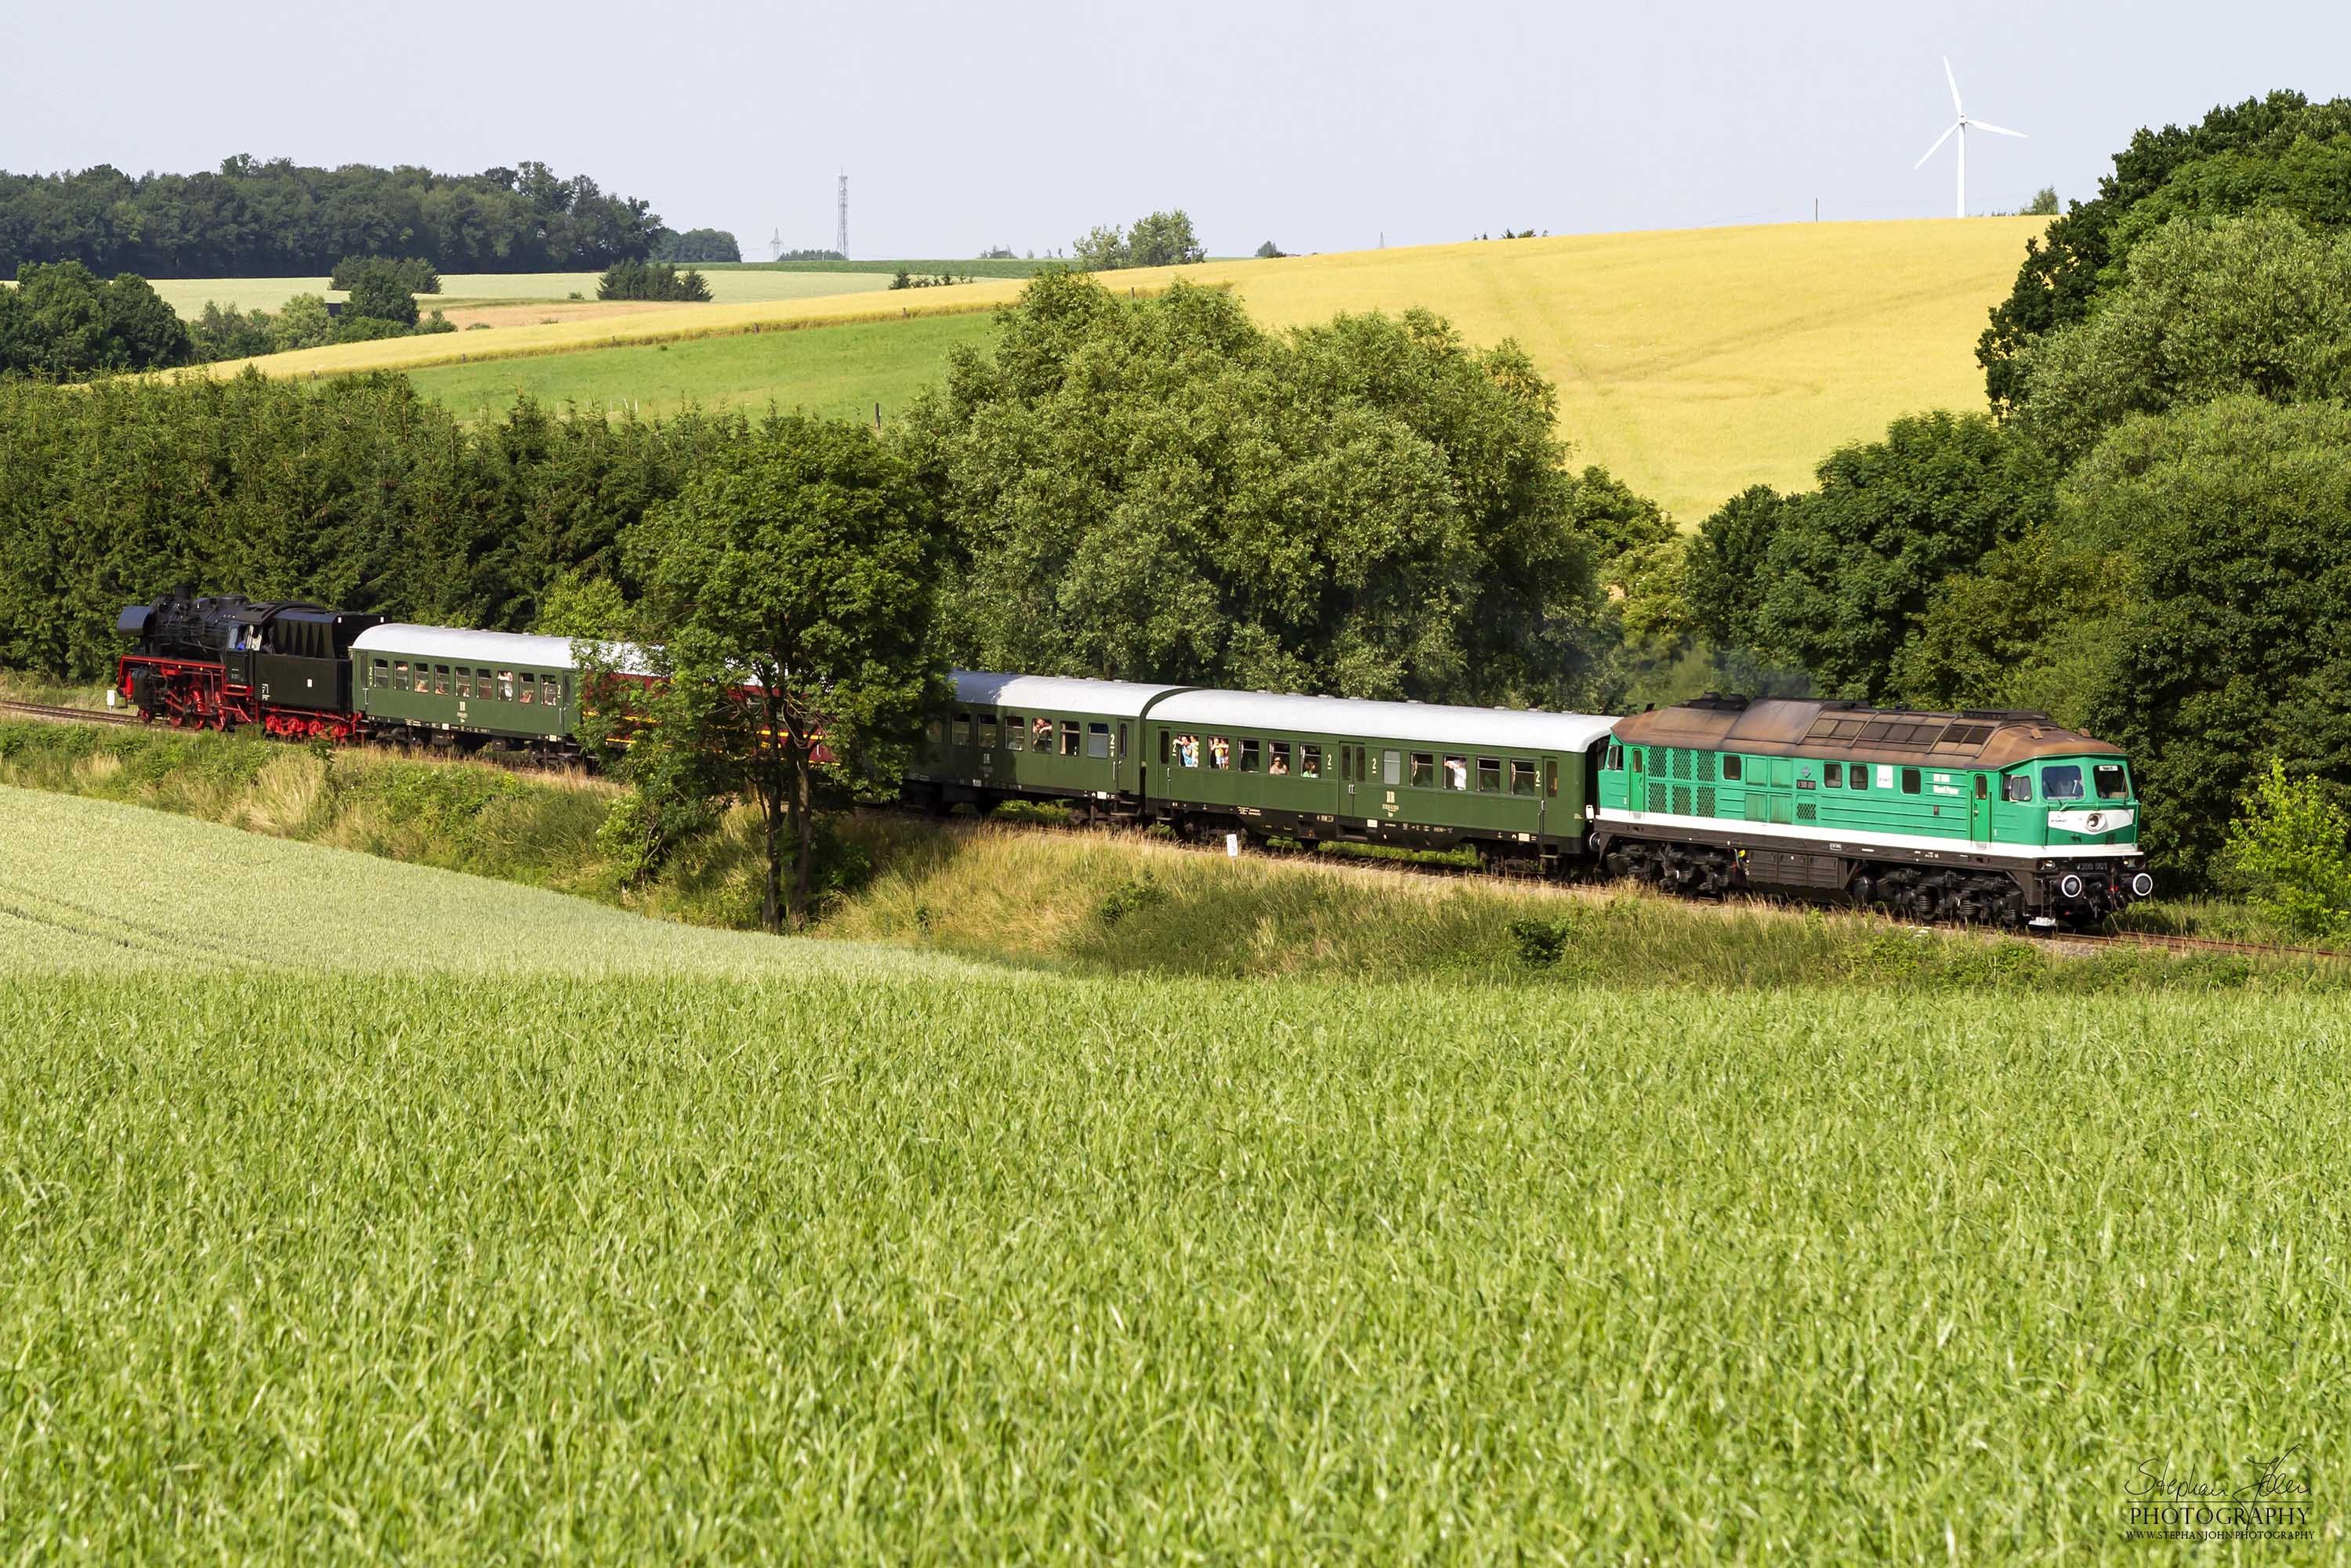 Zum Tag der Umwelt am 30.06.2012 fanden auf der Wismutbahn Sonderzugfahrten statt. Richtung Kayna war der Zug mit Lok 35 1097-1 bespannt. In Richtung Schirchau zog die Lok V300 001 den Zug.